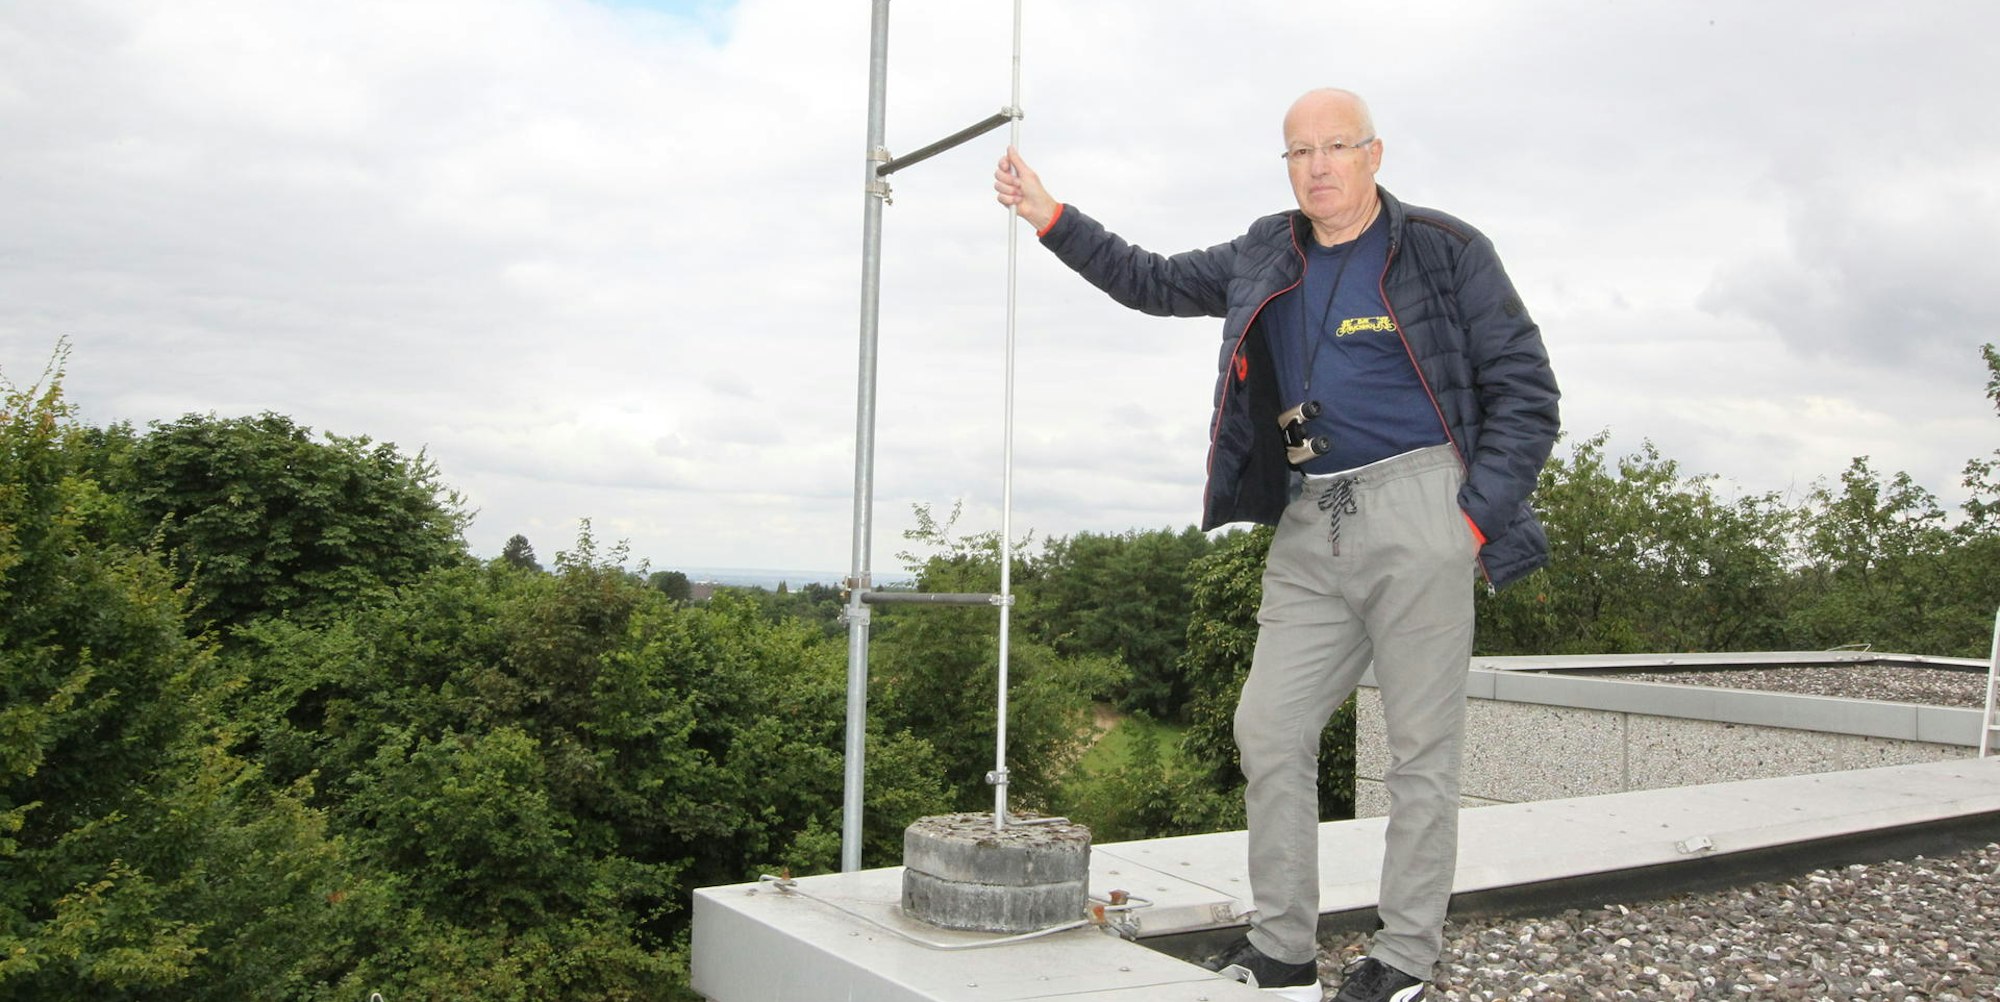 Auf dem Dach der Grundschule Hennef-Happerschoß kontrolliert Helmut Schumacher ein Fluglärm-Messgerät.